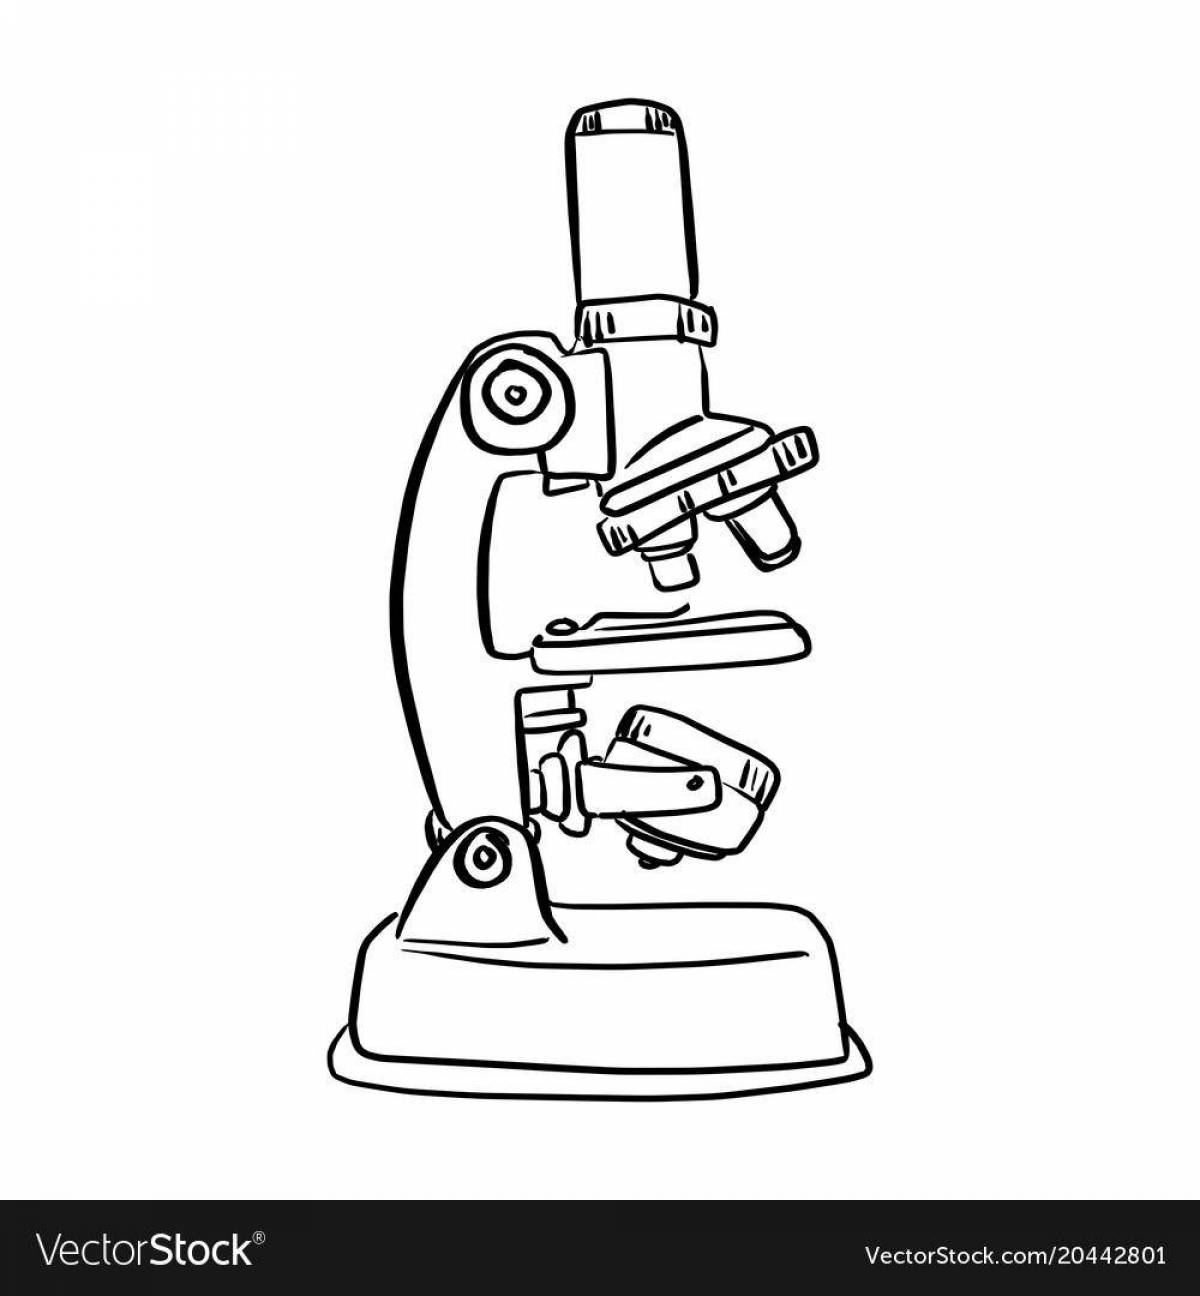 Как проводить измерения на микроскопе? Часть 1